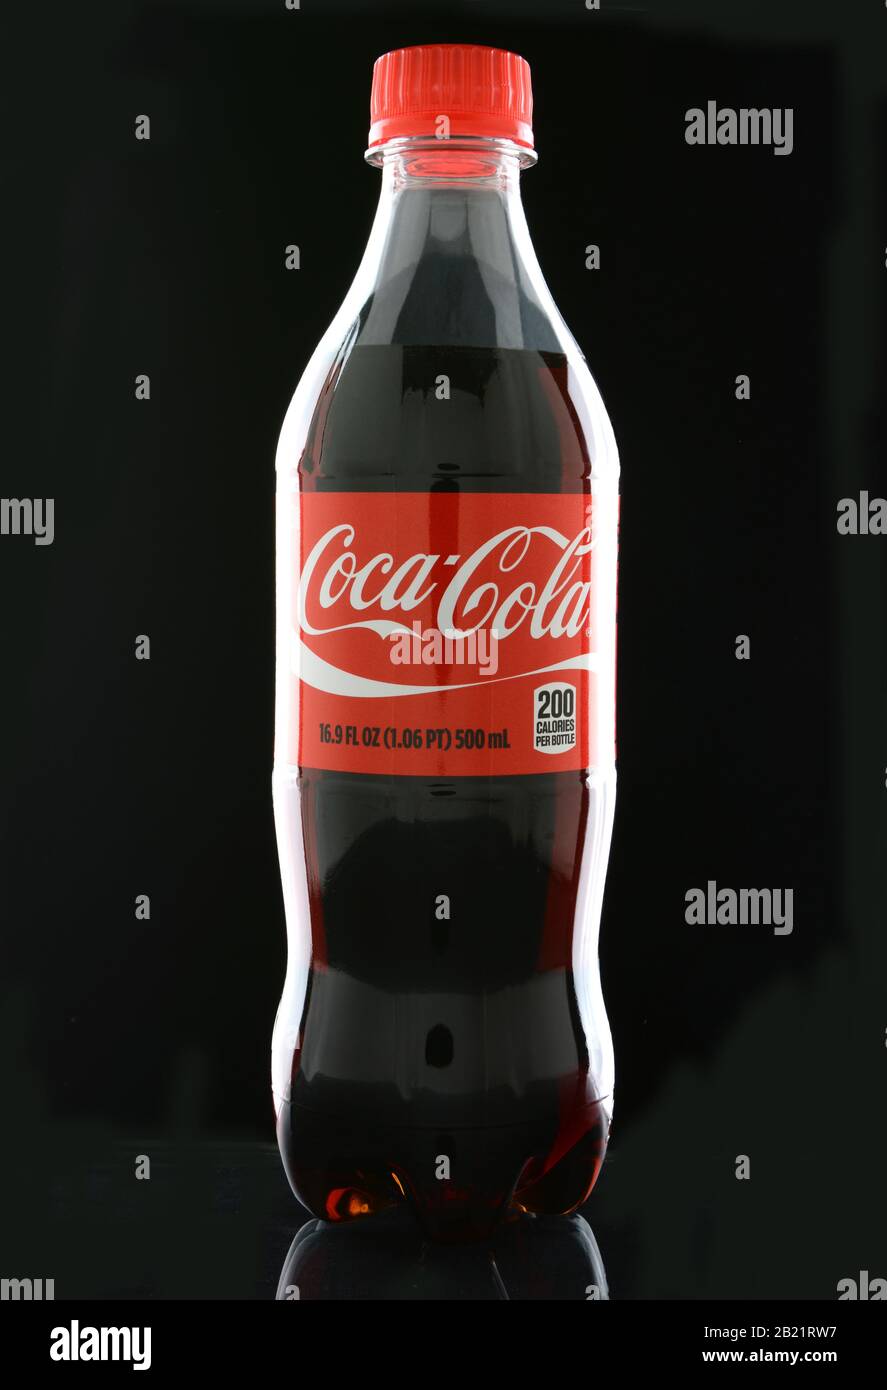 Irvine, California - 15 GENNAIO 2015: Una bottiglia di Coca-Cola sul nero. Il coke è una delle bevande gassate preferite al mondo. Foto Stock